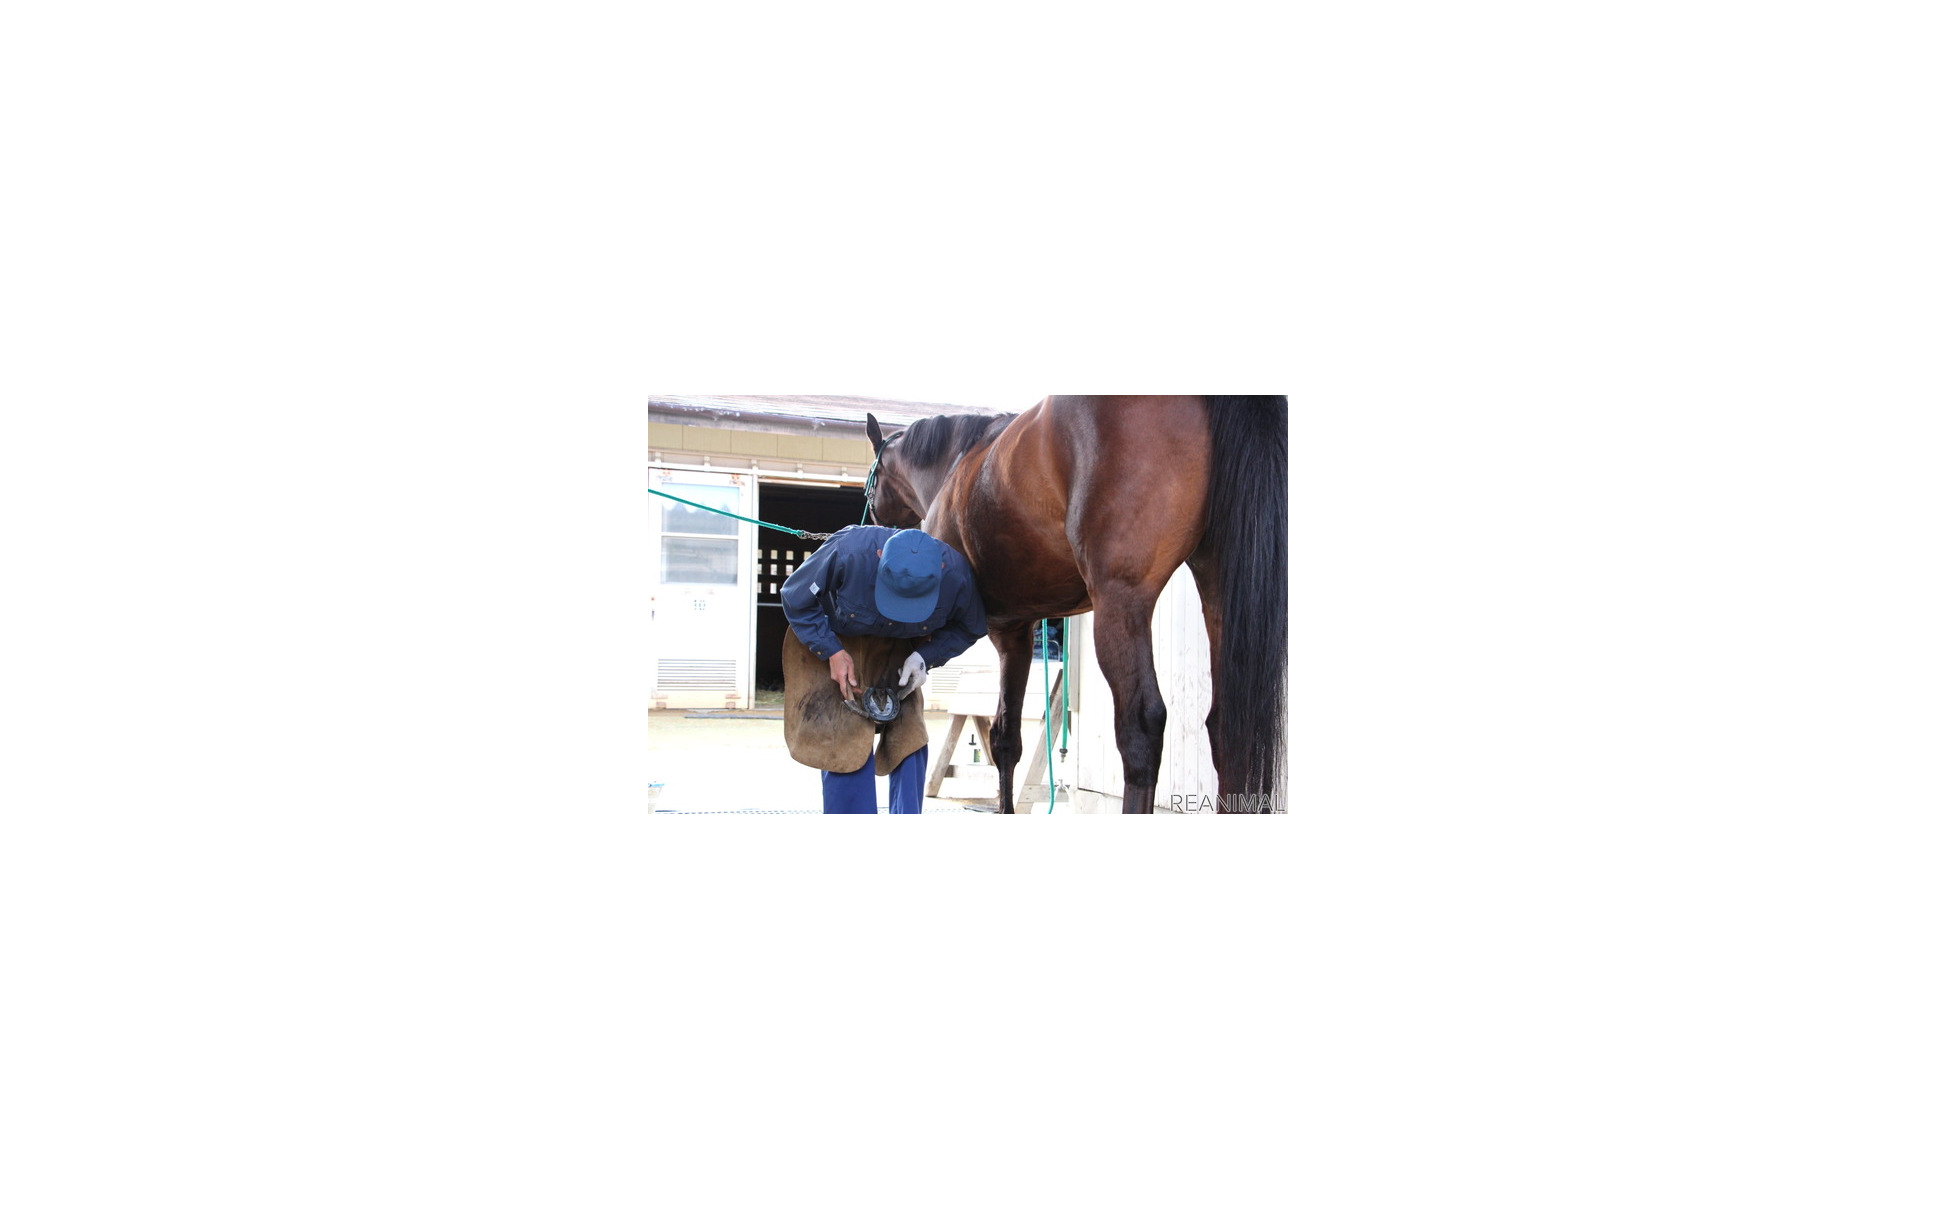 警視庁で活躍する 馬のお巡りさん 交通機動隊の騎馬隊 インタビュー 14枚目の写真 画像 レスポンス Response Jp